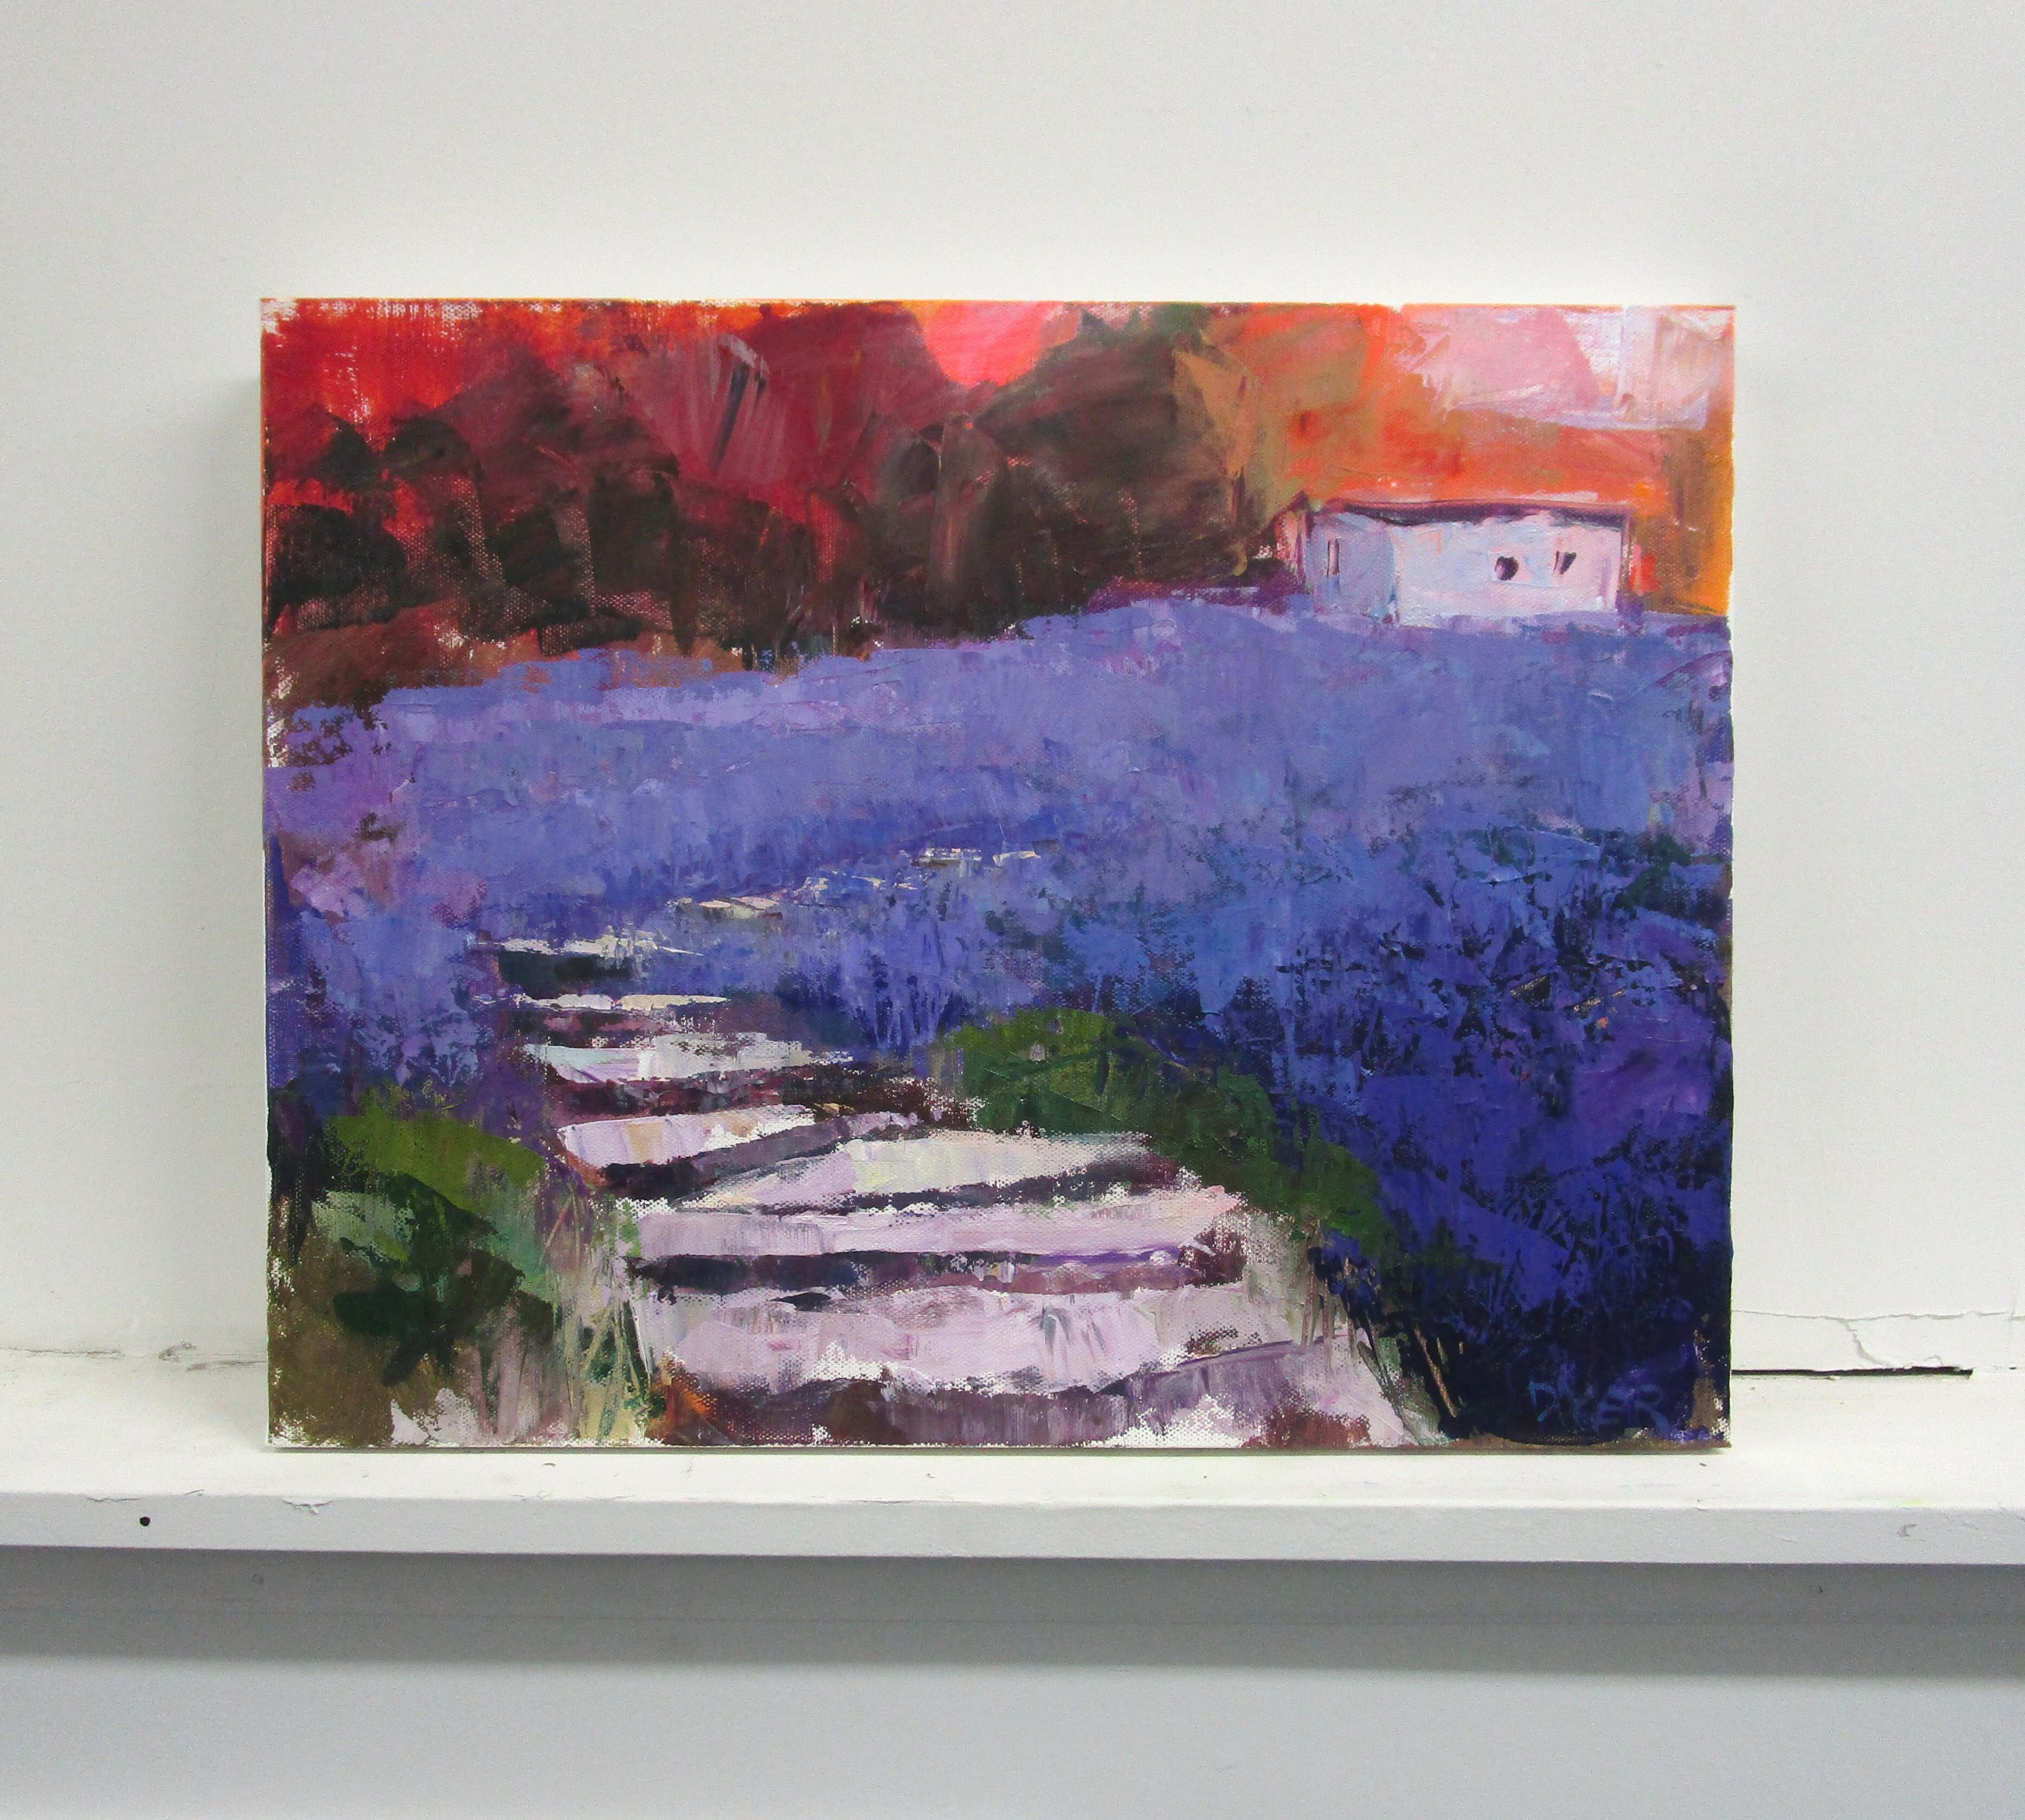 <p>Commentaires de l'artiste<br>L'artiste Janet Dyer imagine un magnifique champ de lavande avec des marches menant à une maison pittoresque. 